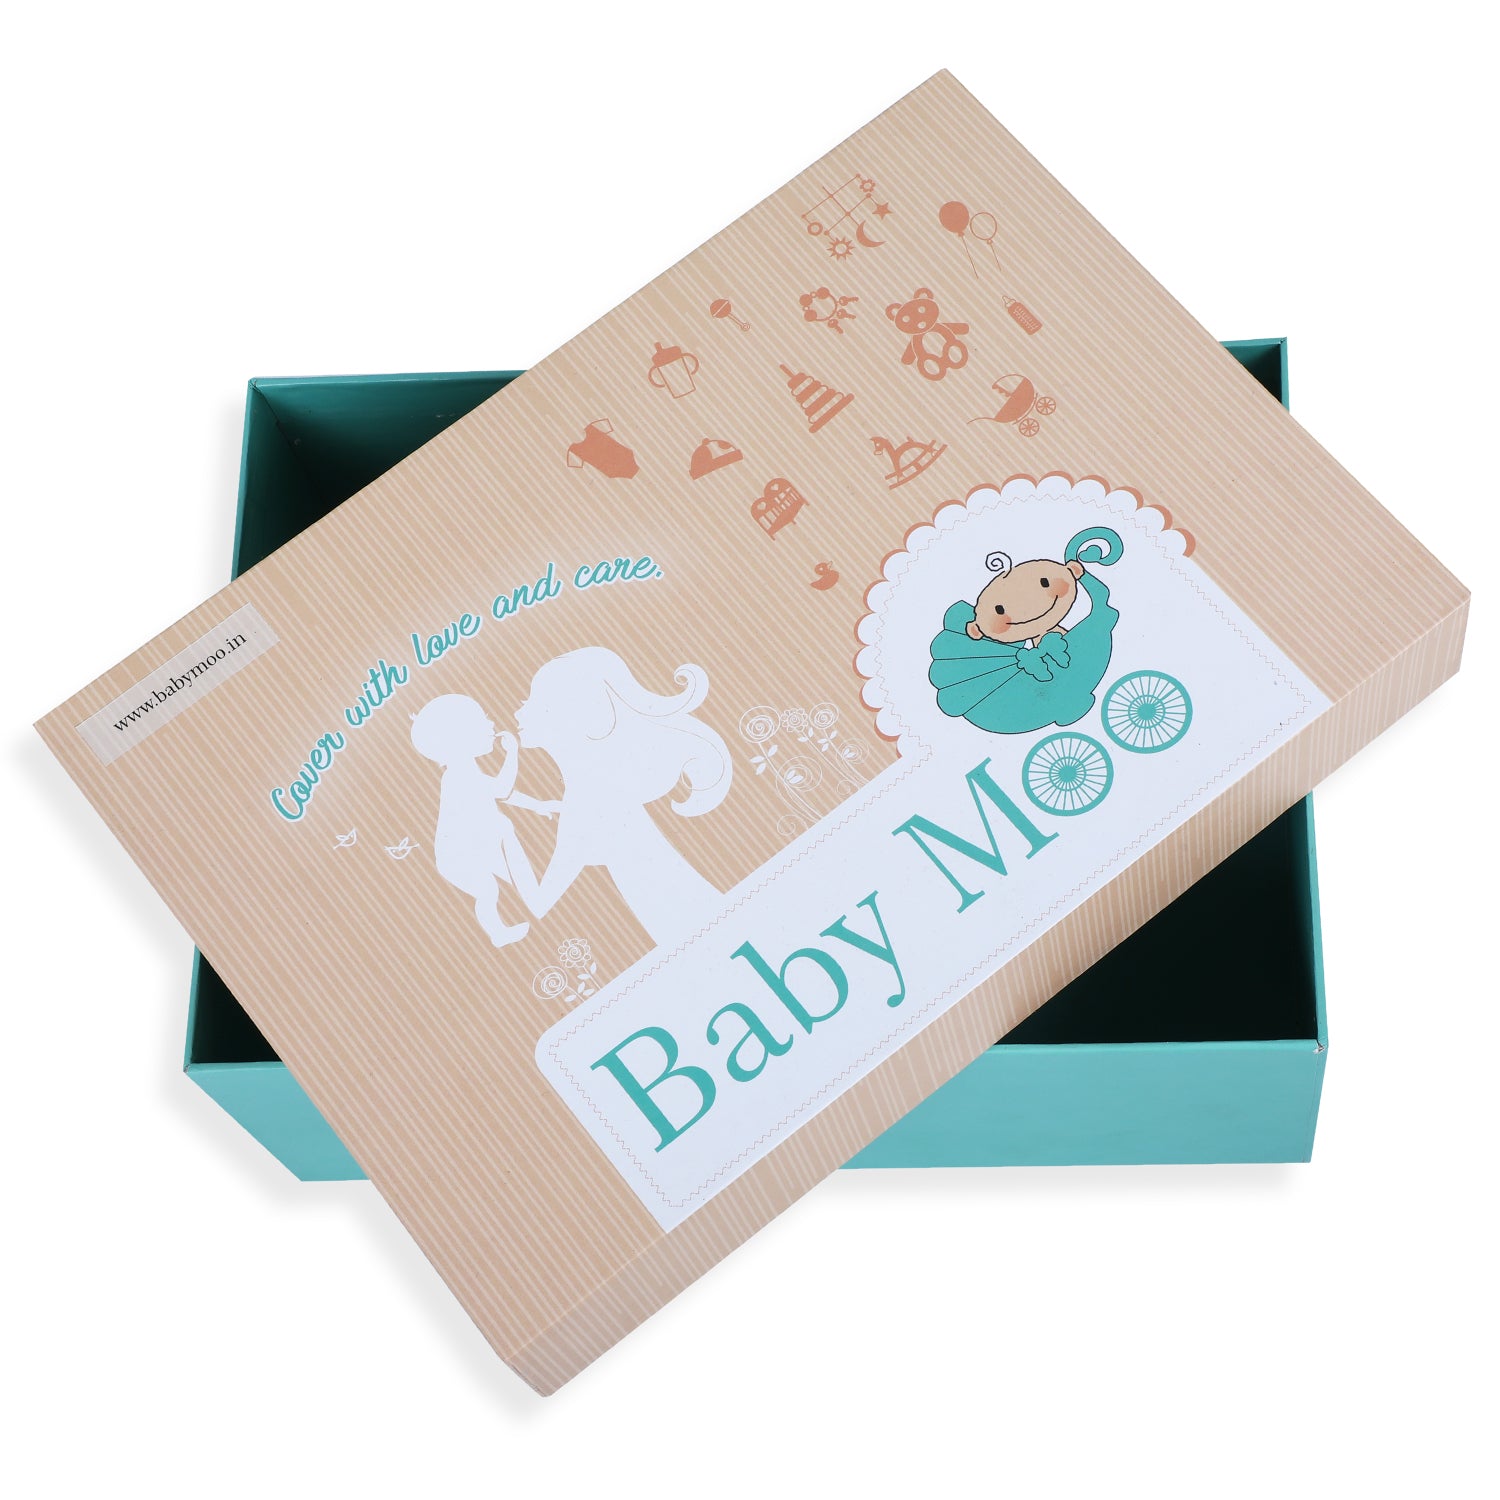 Bathing Essentials Premium Gift Hamper 11 Pcs Unisex Multicolour - Baby Moo